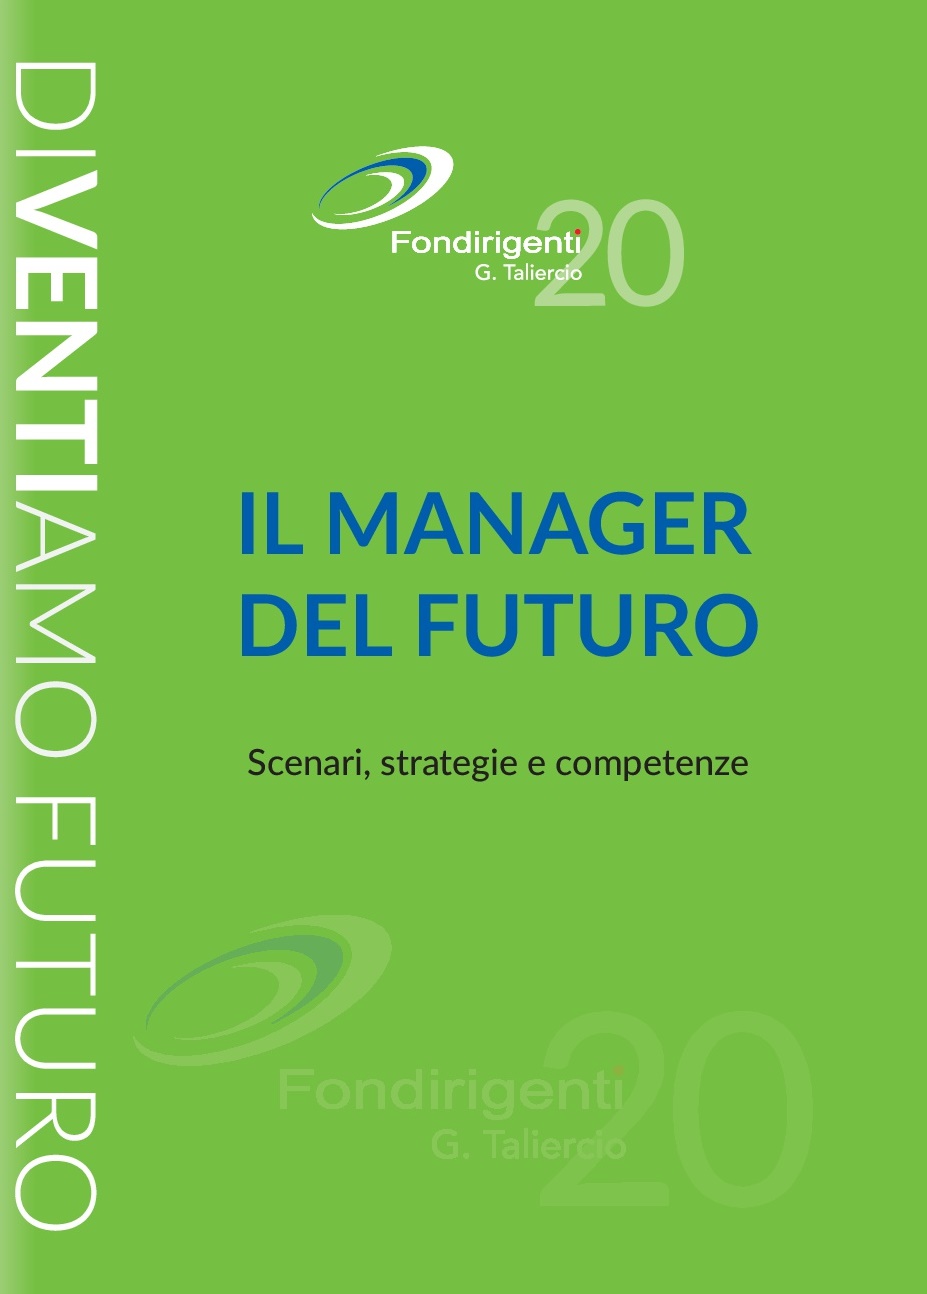 Scopri di più sull'articolo “Il Manager del Futuro”, intervento del Presidente Avenia sull’evoluzione del ruolo manageriale